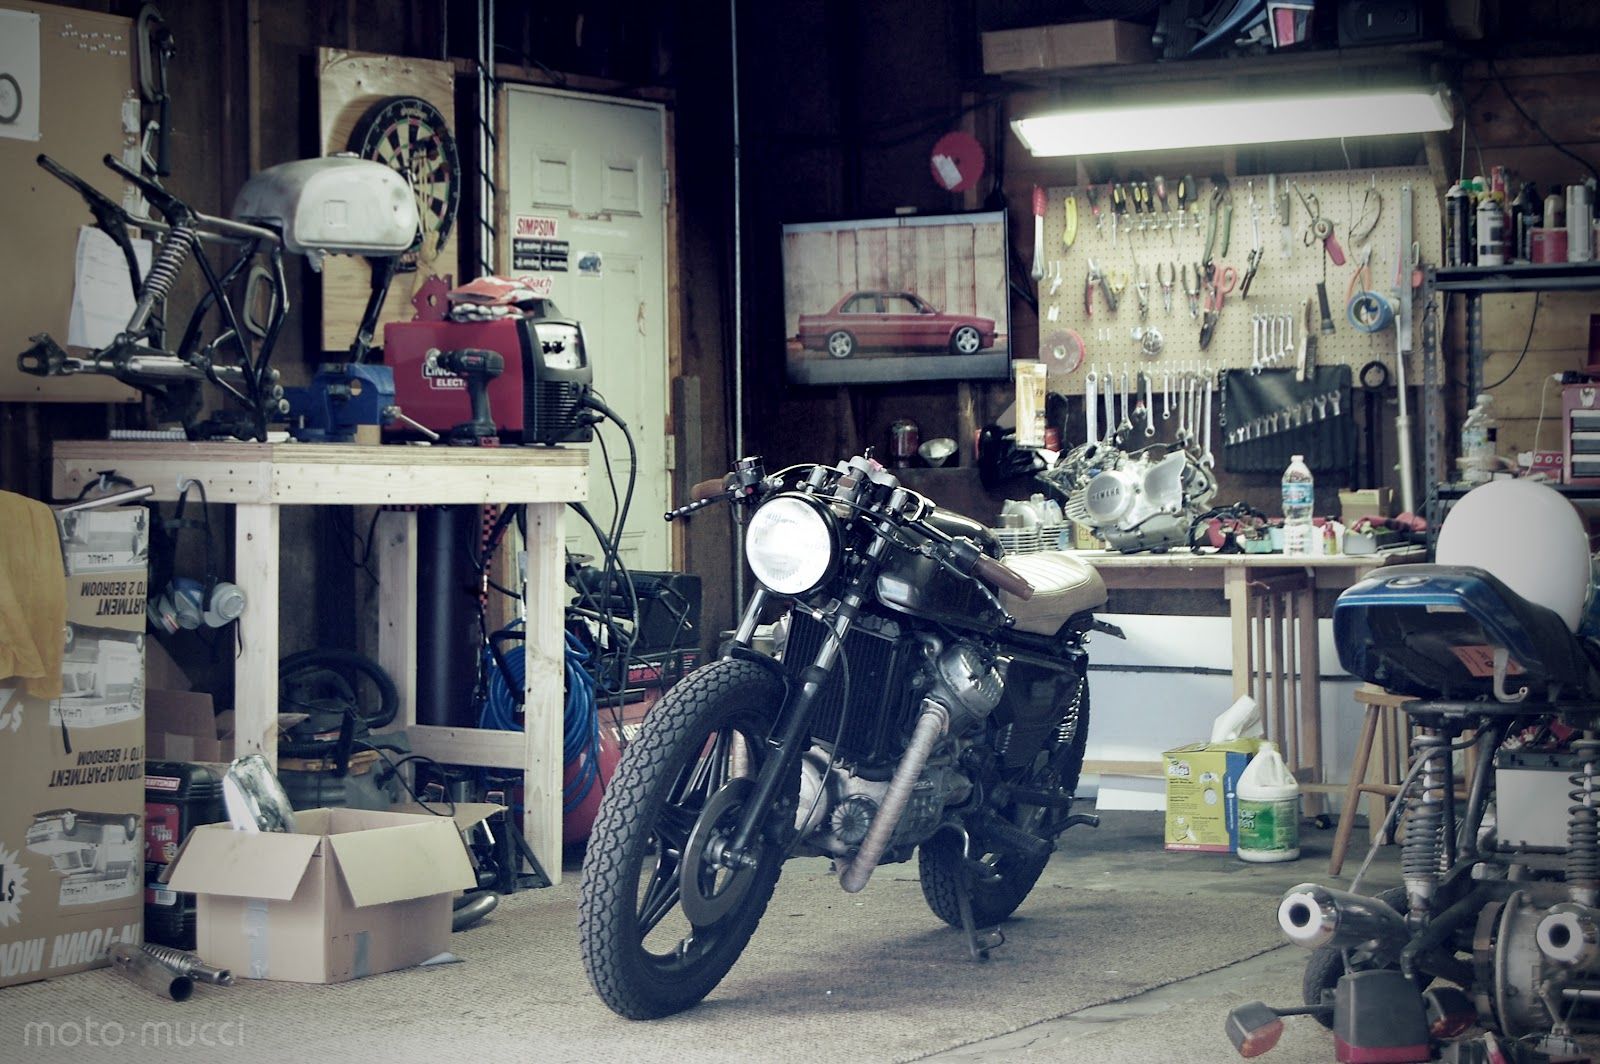 Обслуживание мотоцикла в гараже своими руками перед и после мотосезона